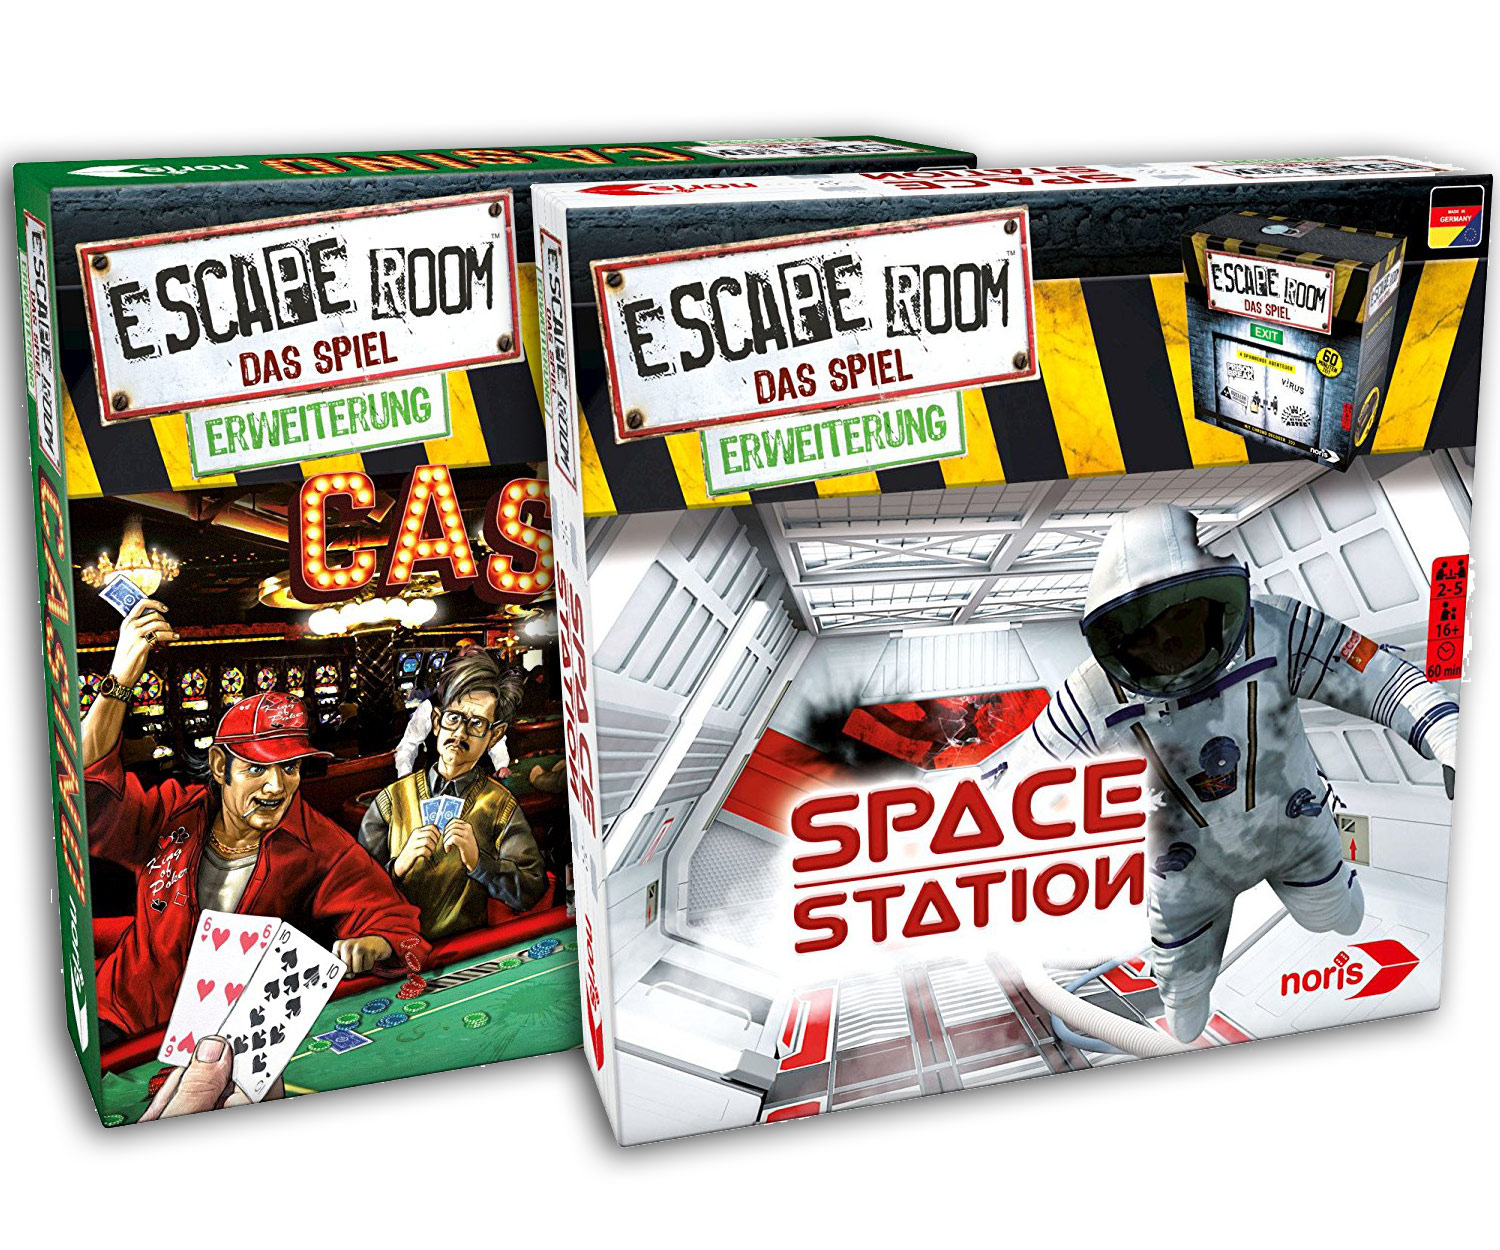 Escape Room Erweiterung Casino und Space Station